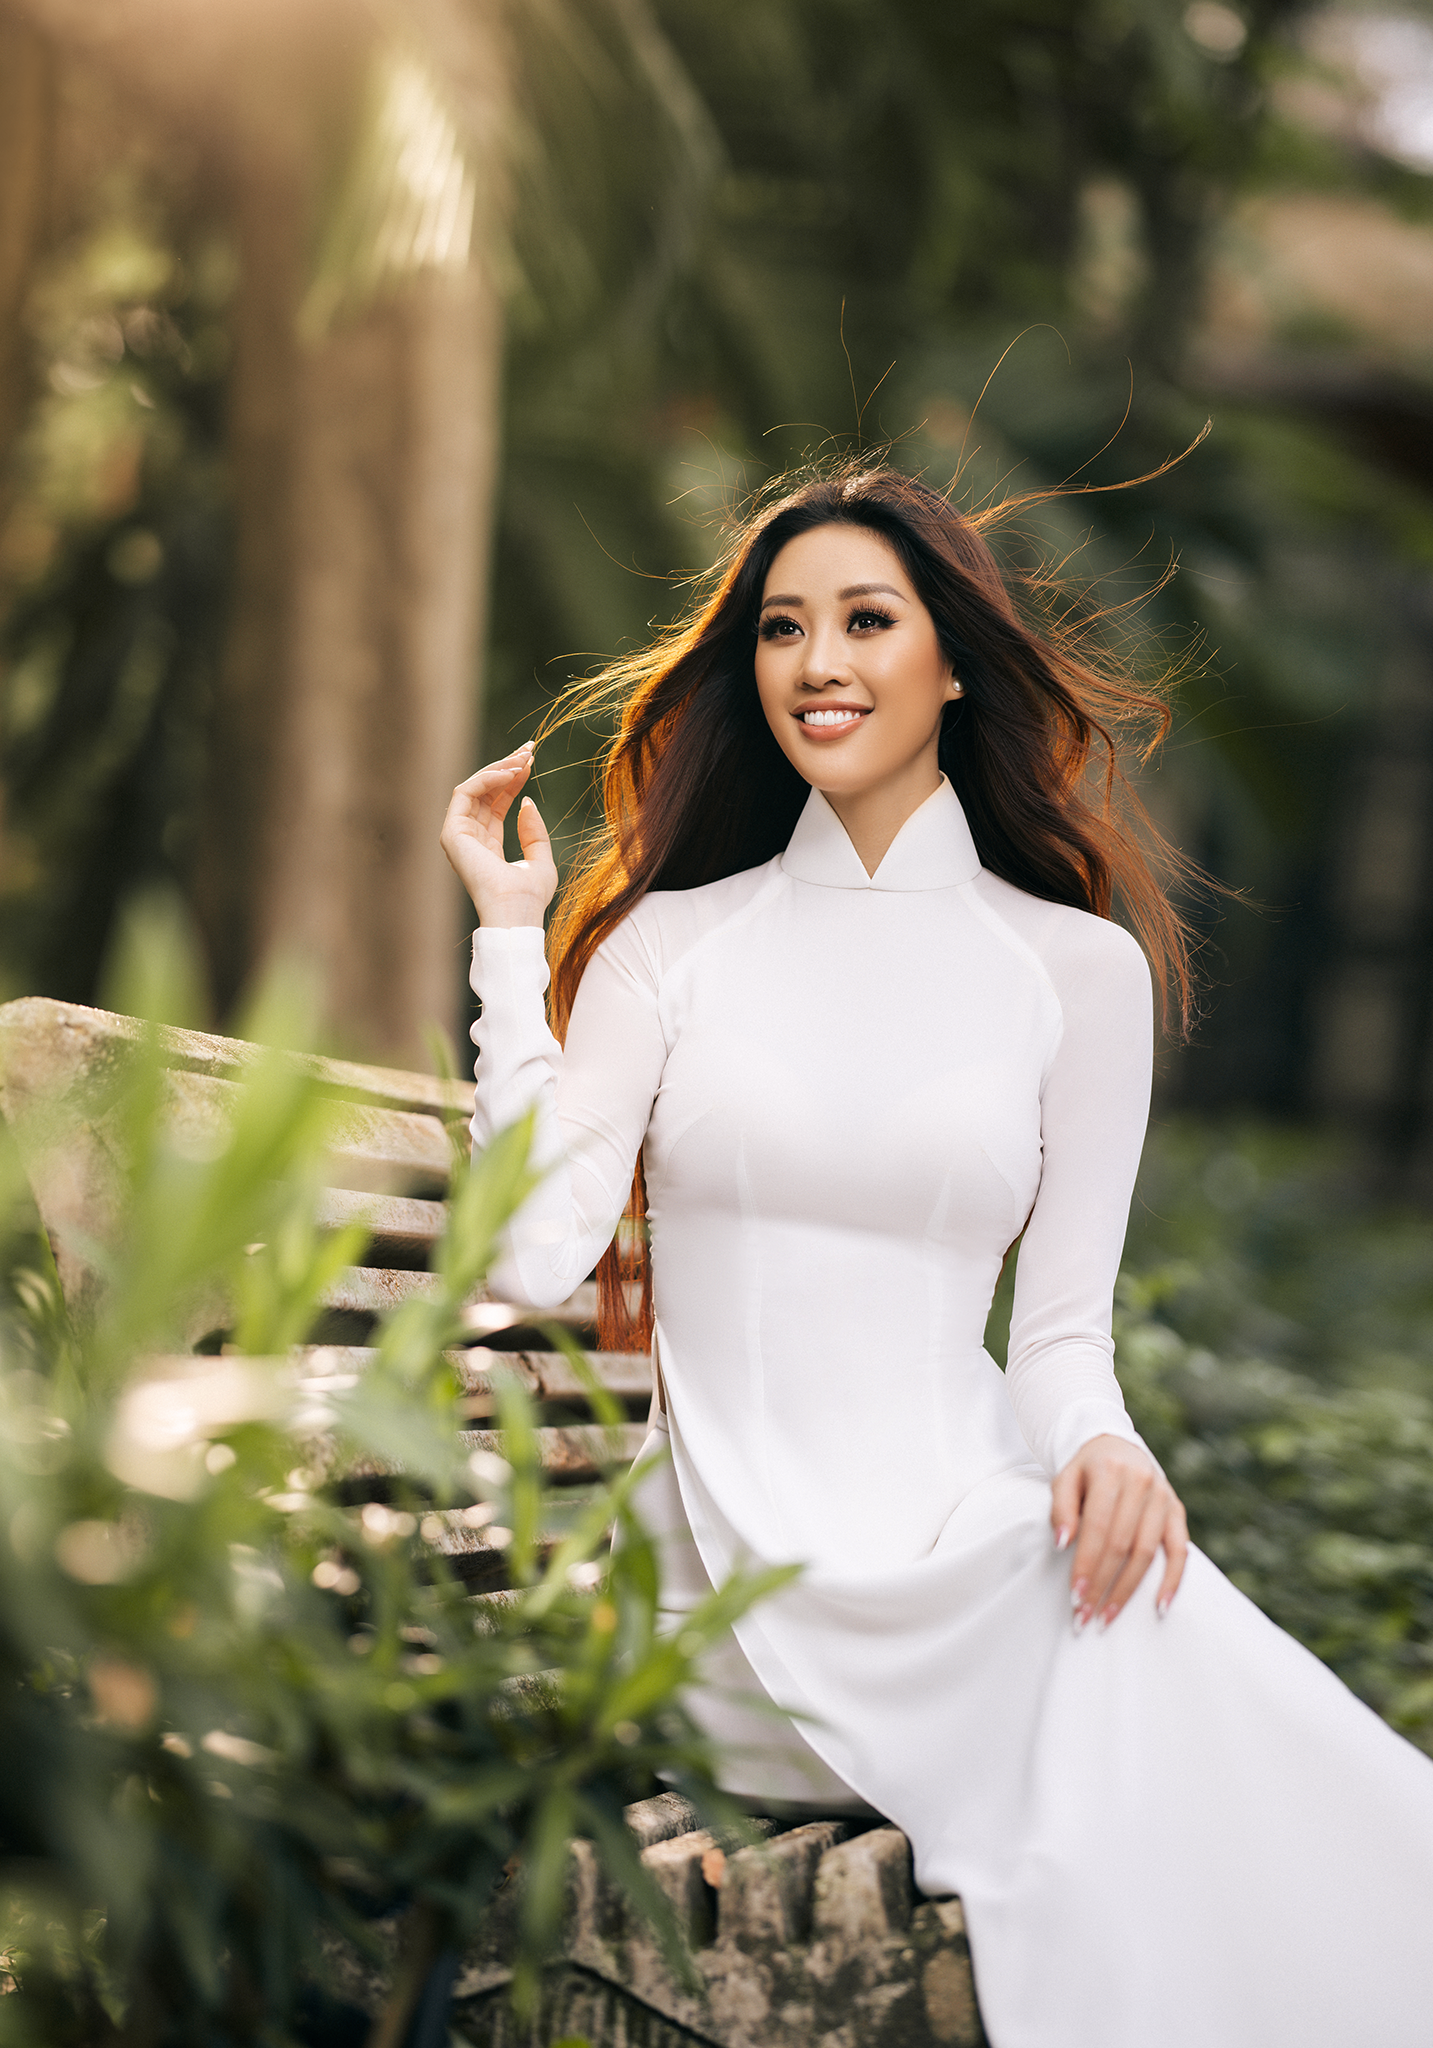 Hoa hậu Khánh Vân mặc áo dài trắng đẹp như mỹ nhân trong tranh - Ảnh 1.